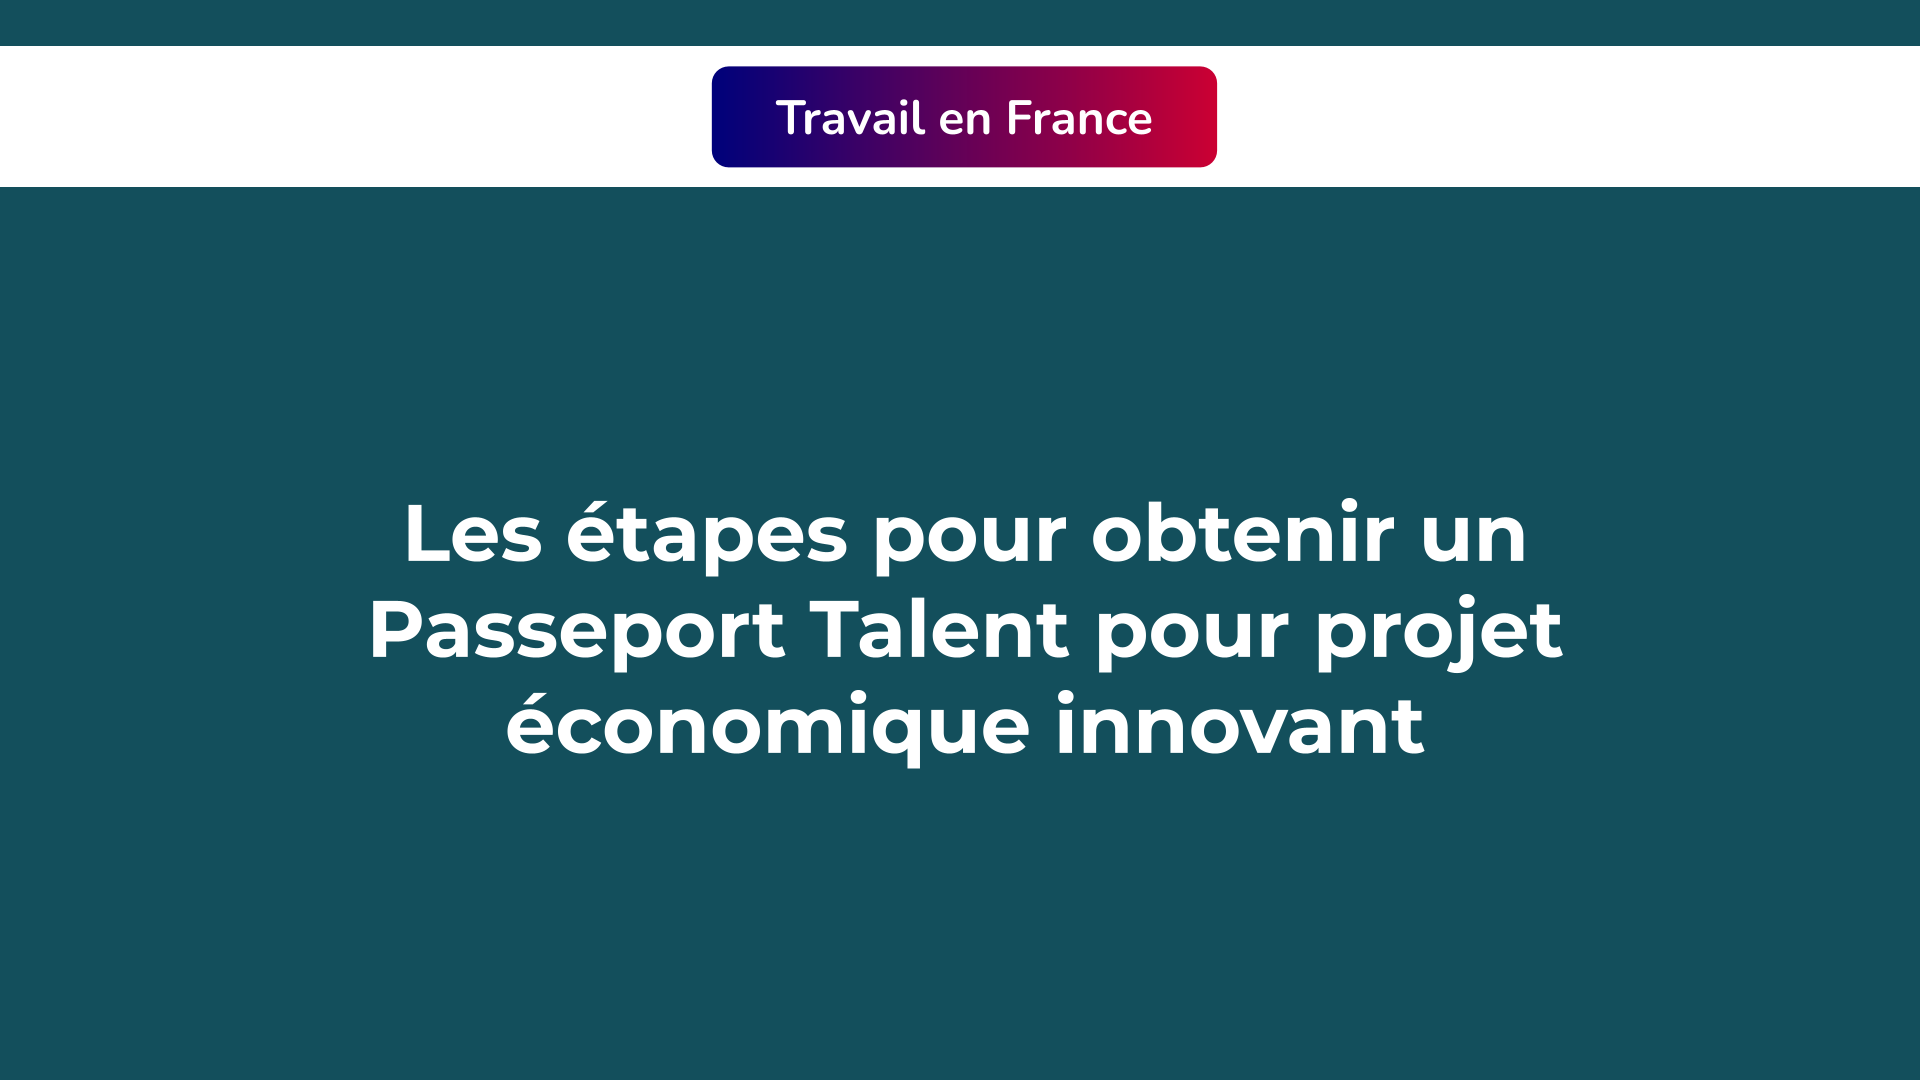 Passeport Talent projet économique innovant